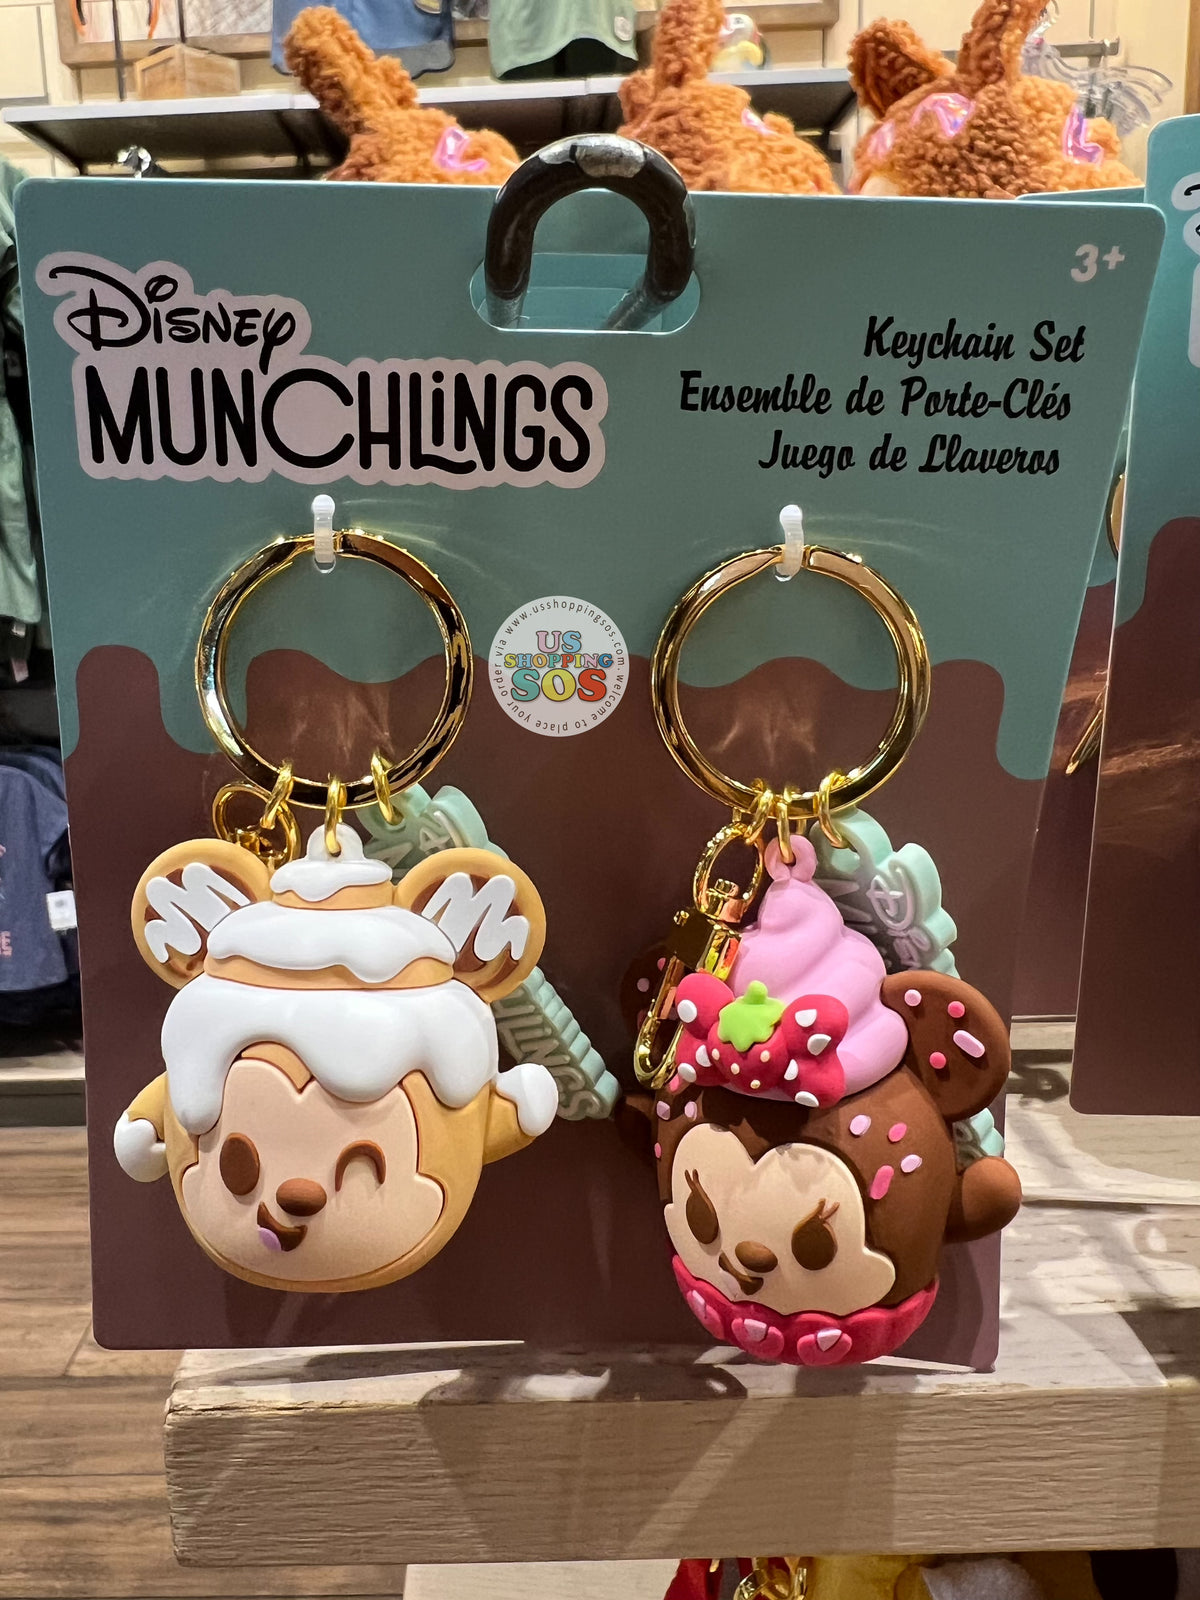 Disney Aulani Mickey and Minnie Keychain Set